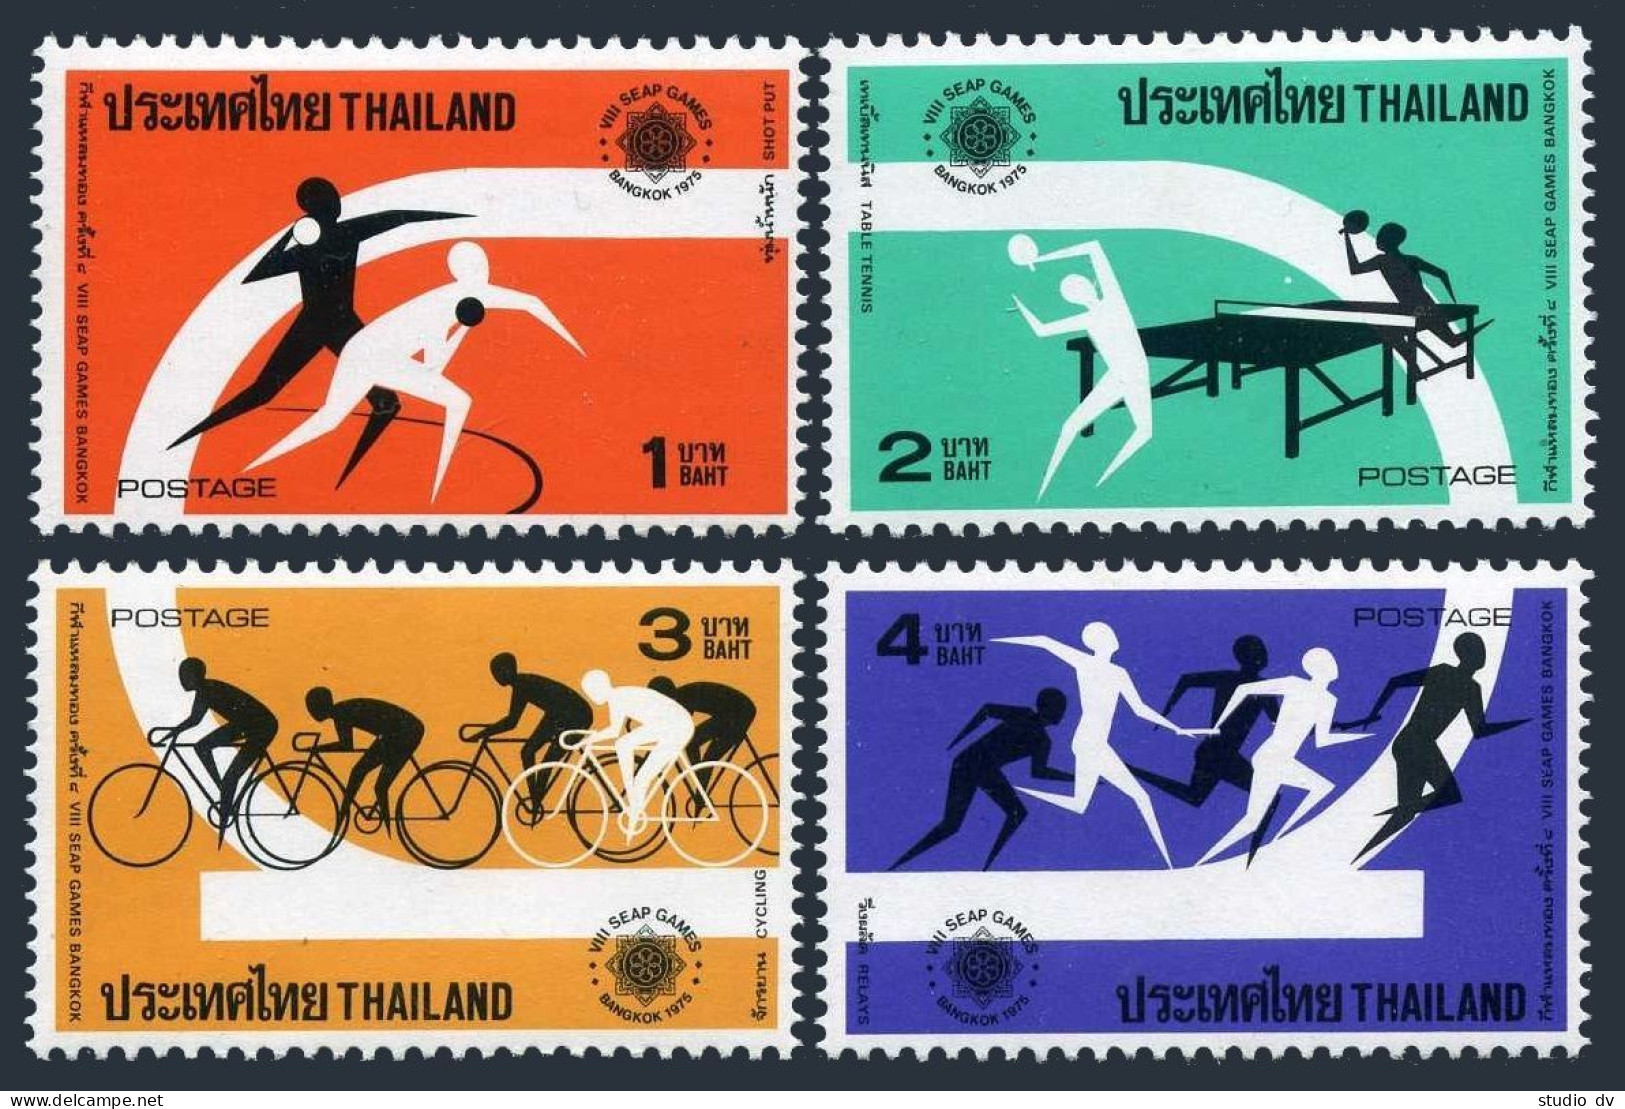 Thailand 774-777,777a,MNH.Michel 793-796,Bl.8. 8th SEAP Games,1975.Table Tennis, - Thaïlande